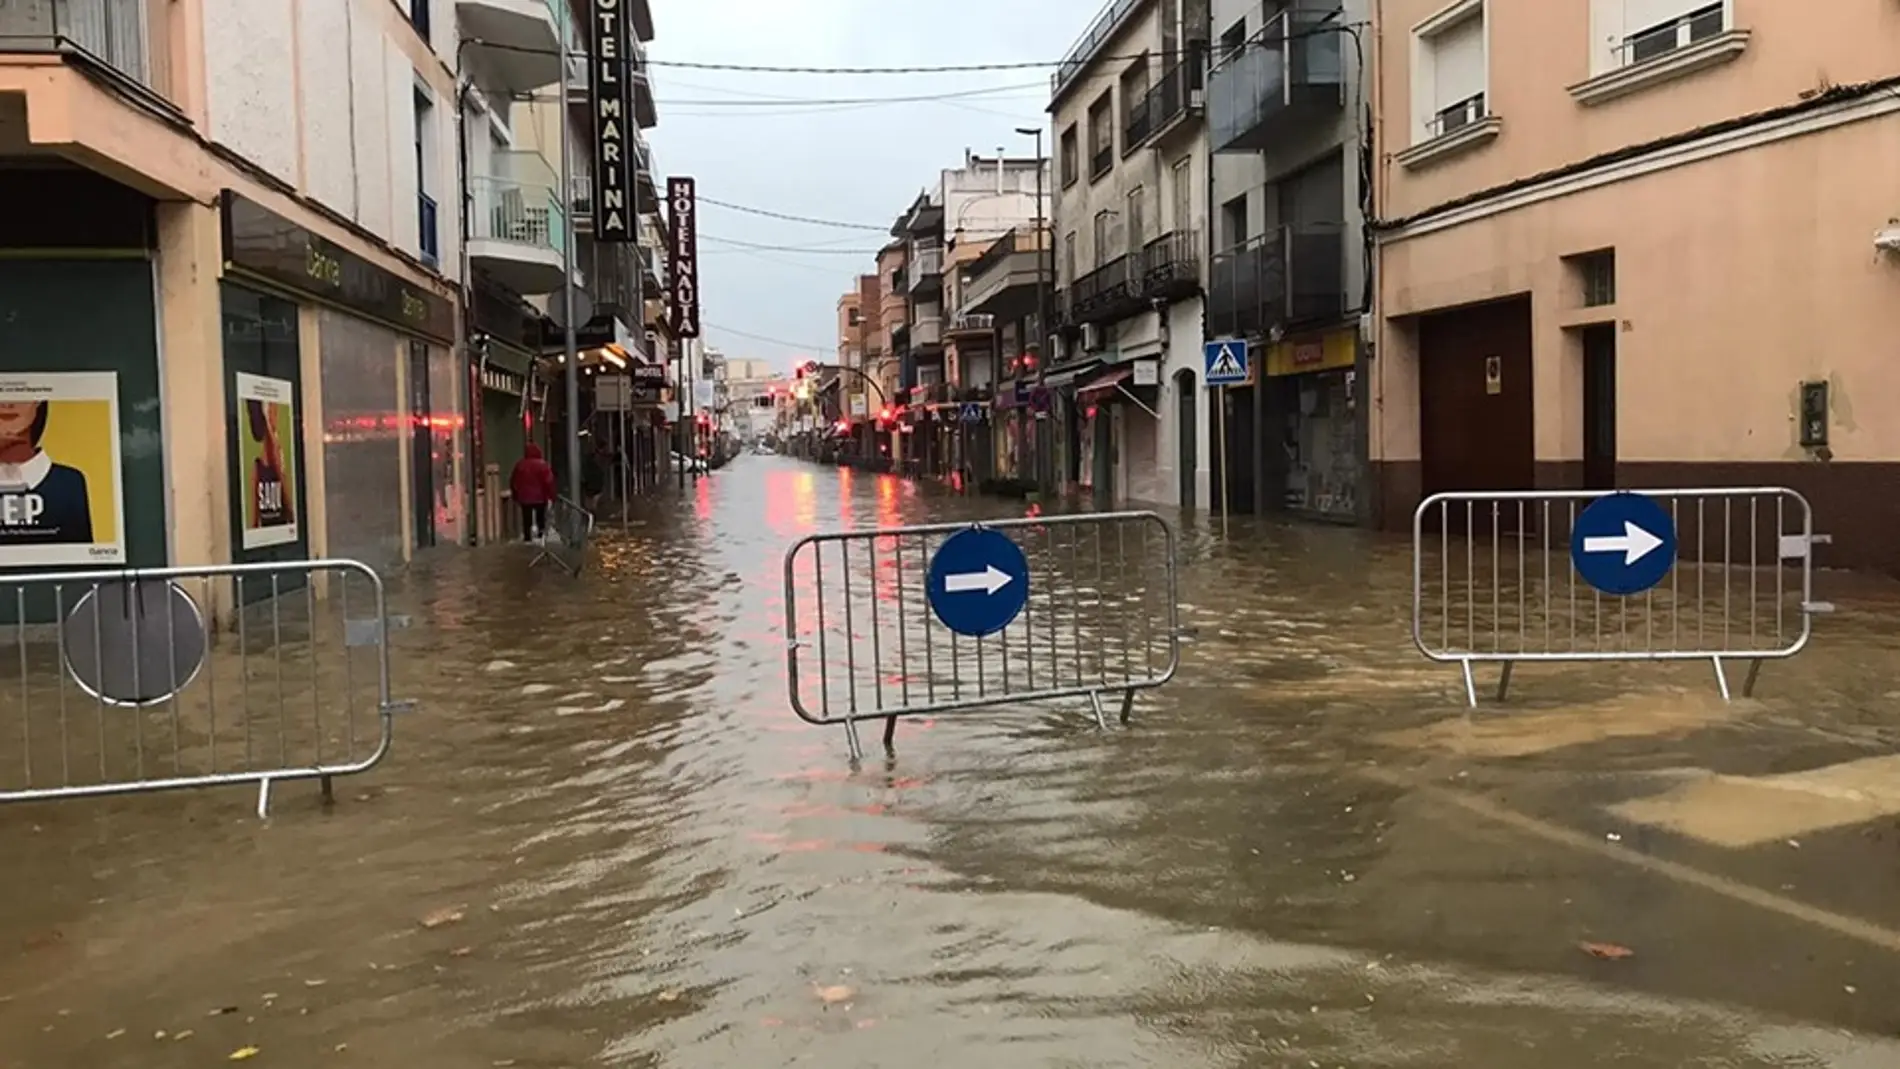 Inundaciones en Palamós por la DANA